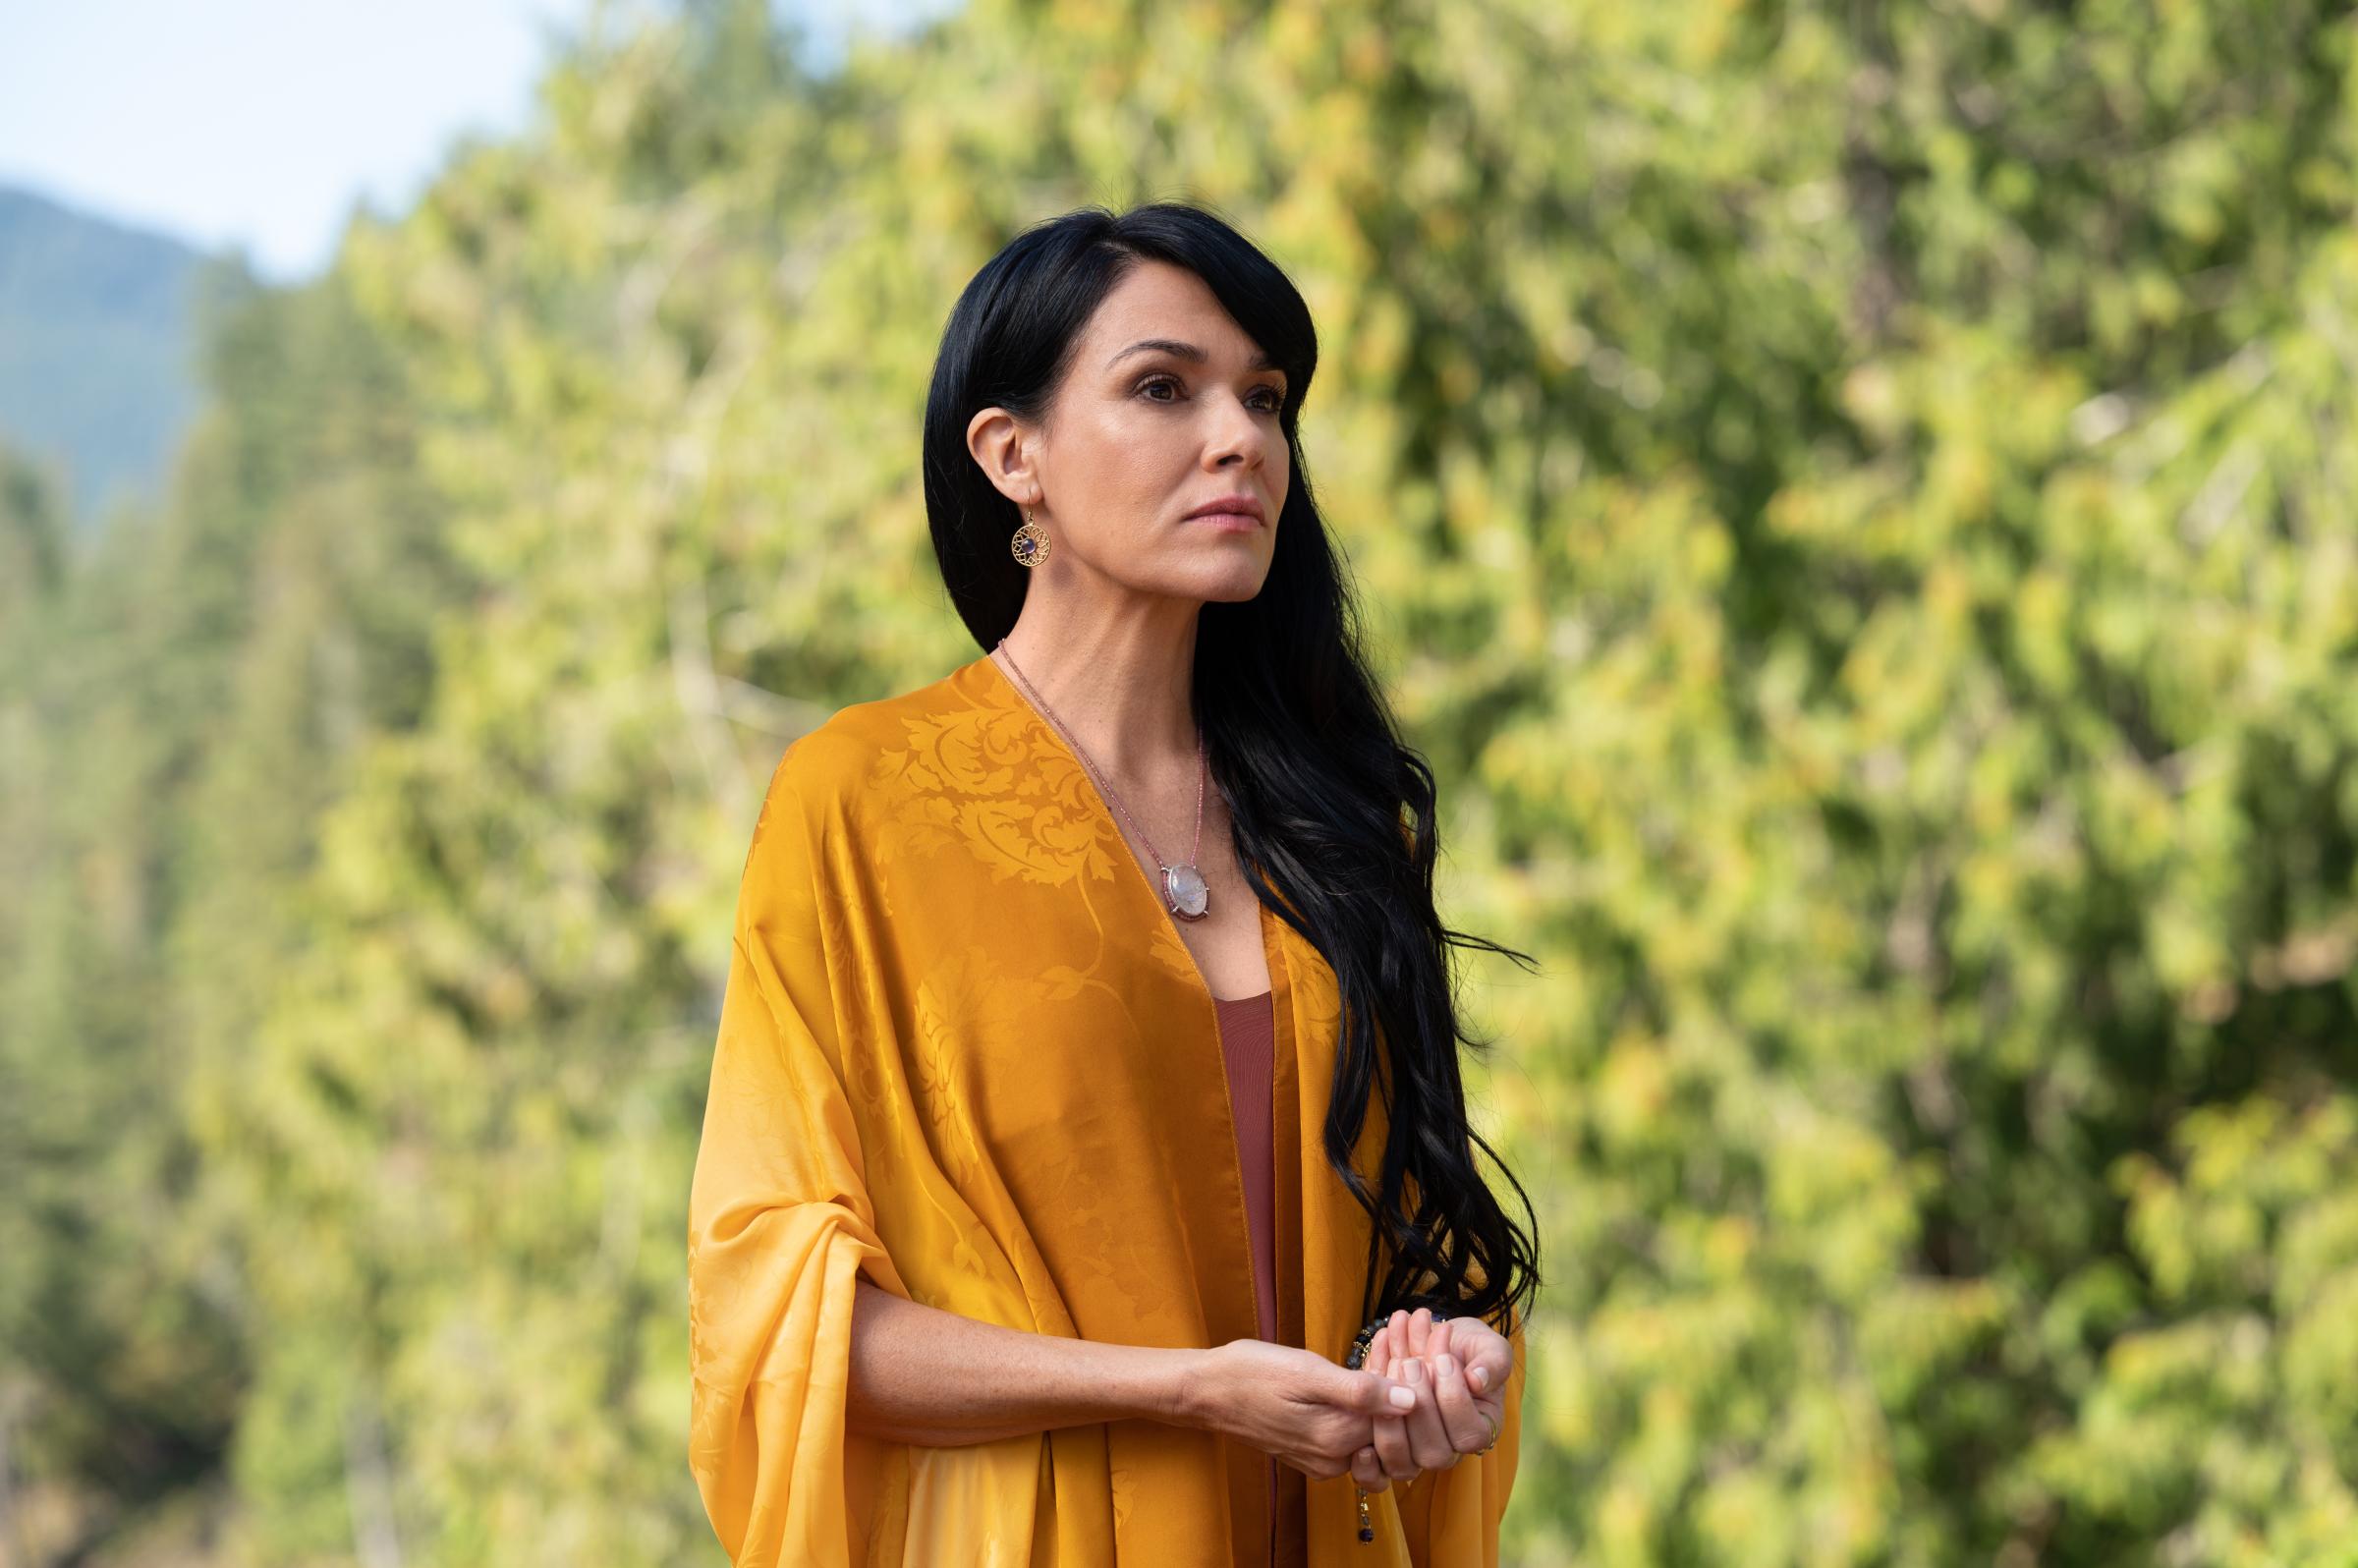 Simone Kessell as Lottie in 'Yellowjackets' season 2, episode 1.